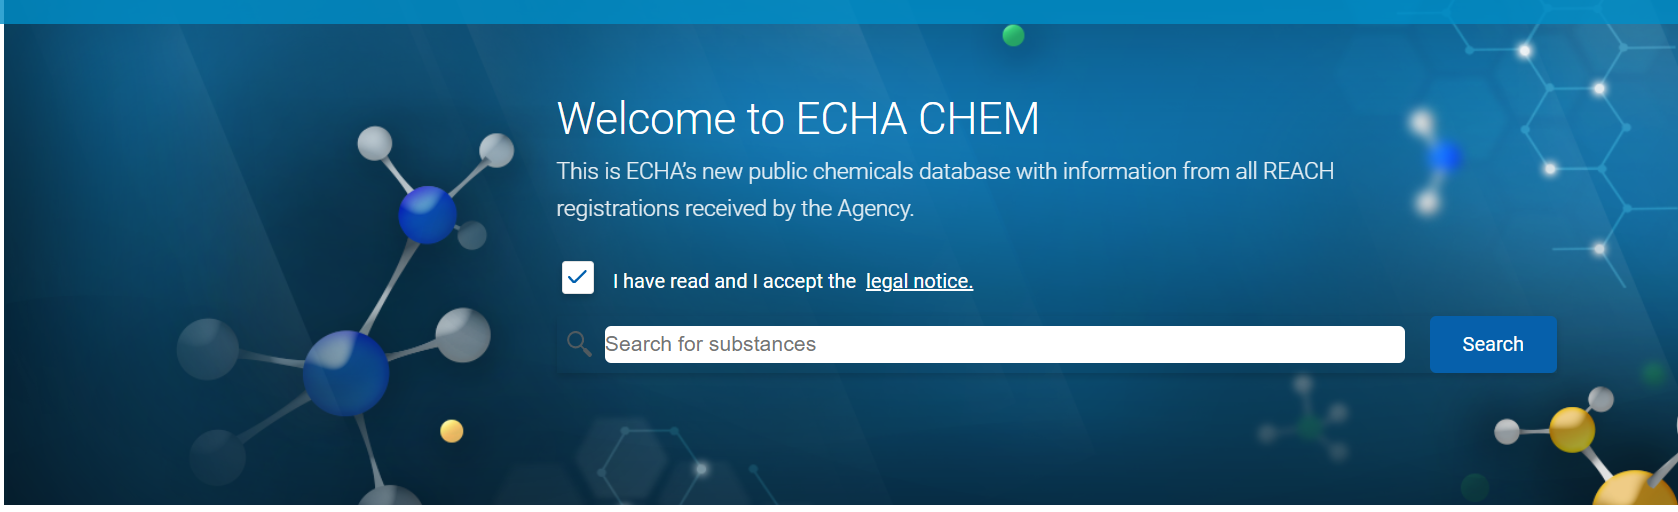 欧洲,化学品管理,化学品数据库,瑞旭,ECHA